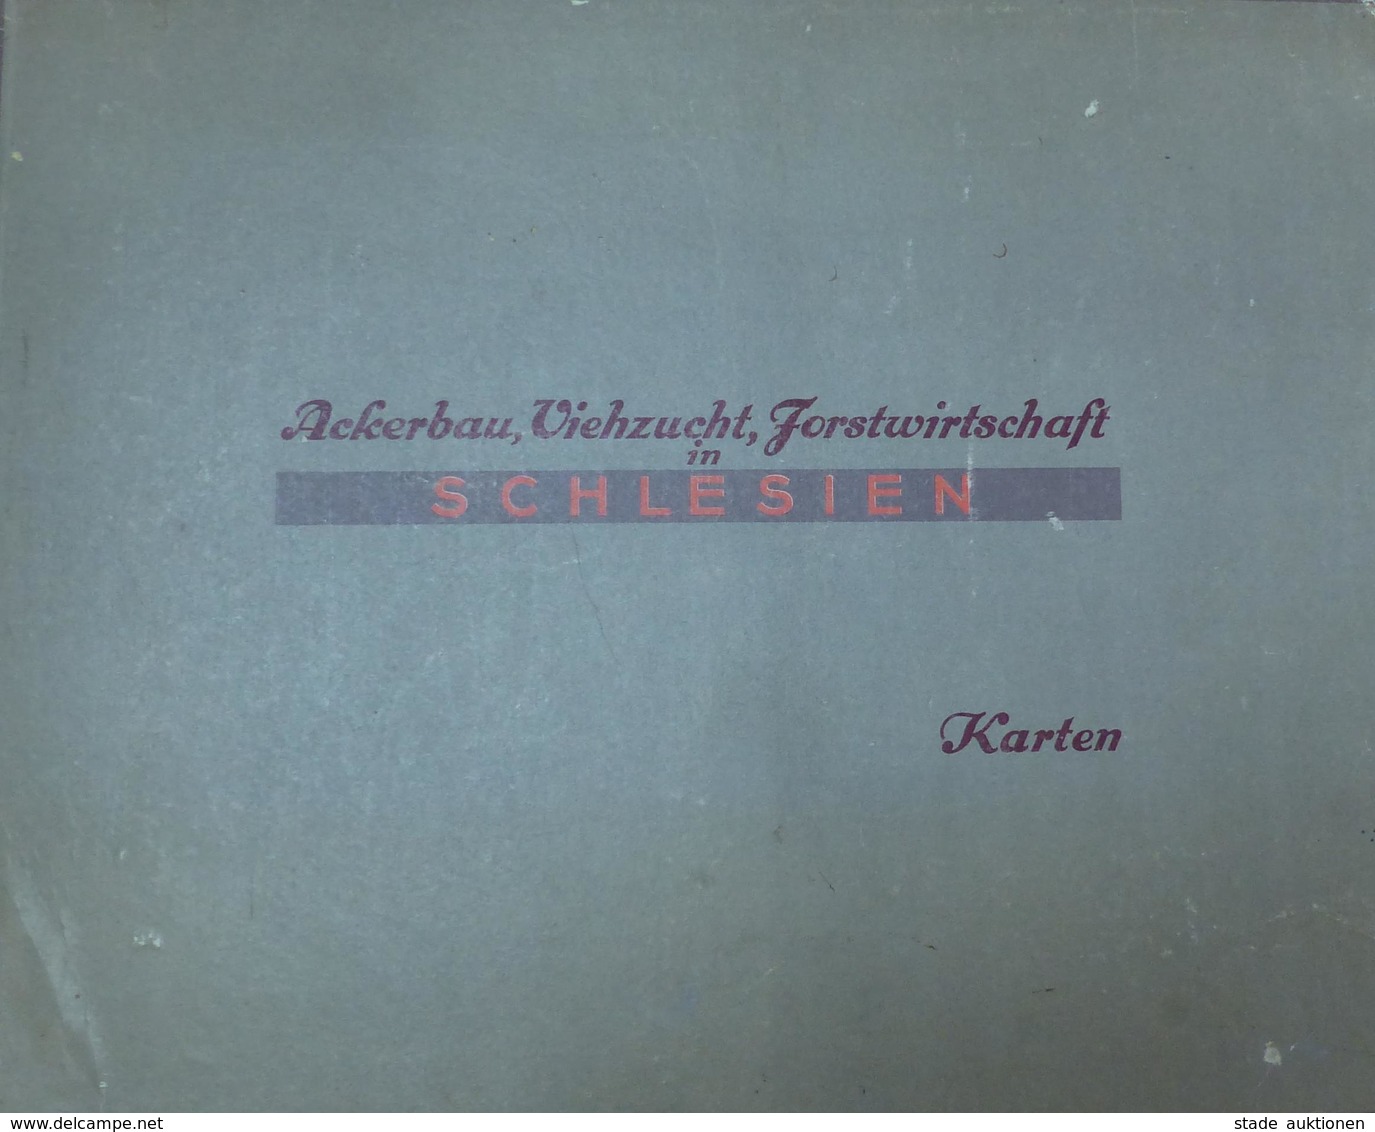 Landwirtschaft Schlesien Ackerbau Viehzucht Forstwirtschaft Kartenband 1946 Die Leistungen Im Mittel Der Jahre 1934 - 38 - Ausstellungen